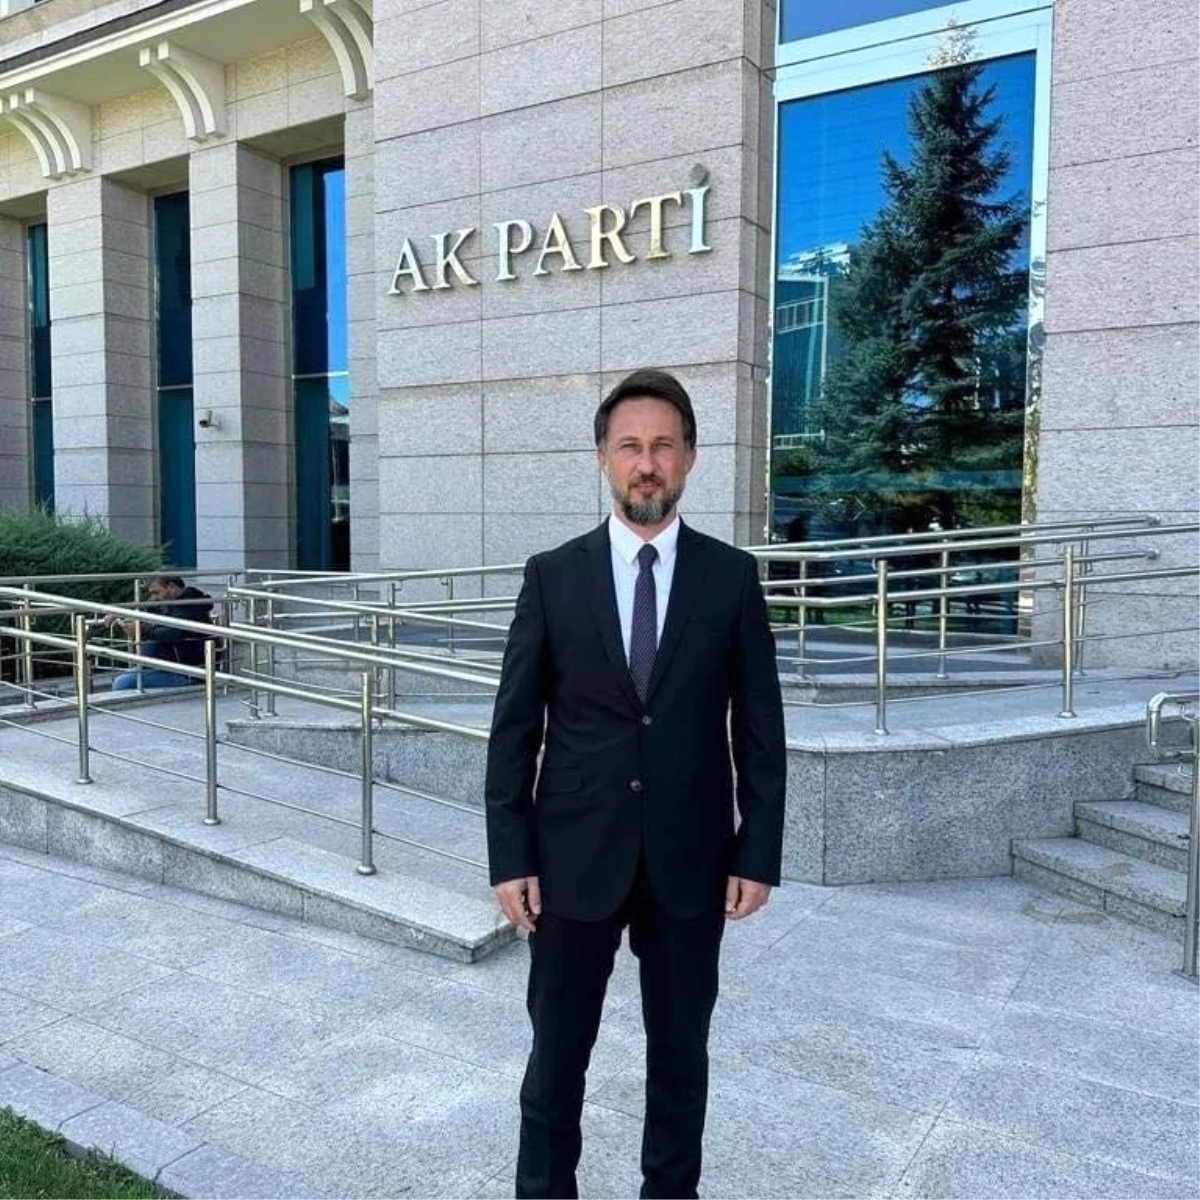 Kütahya Gediz AK Parti İlçe Başkanının Yönetim Kurulu Belirlendi